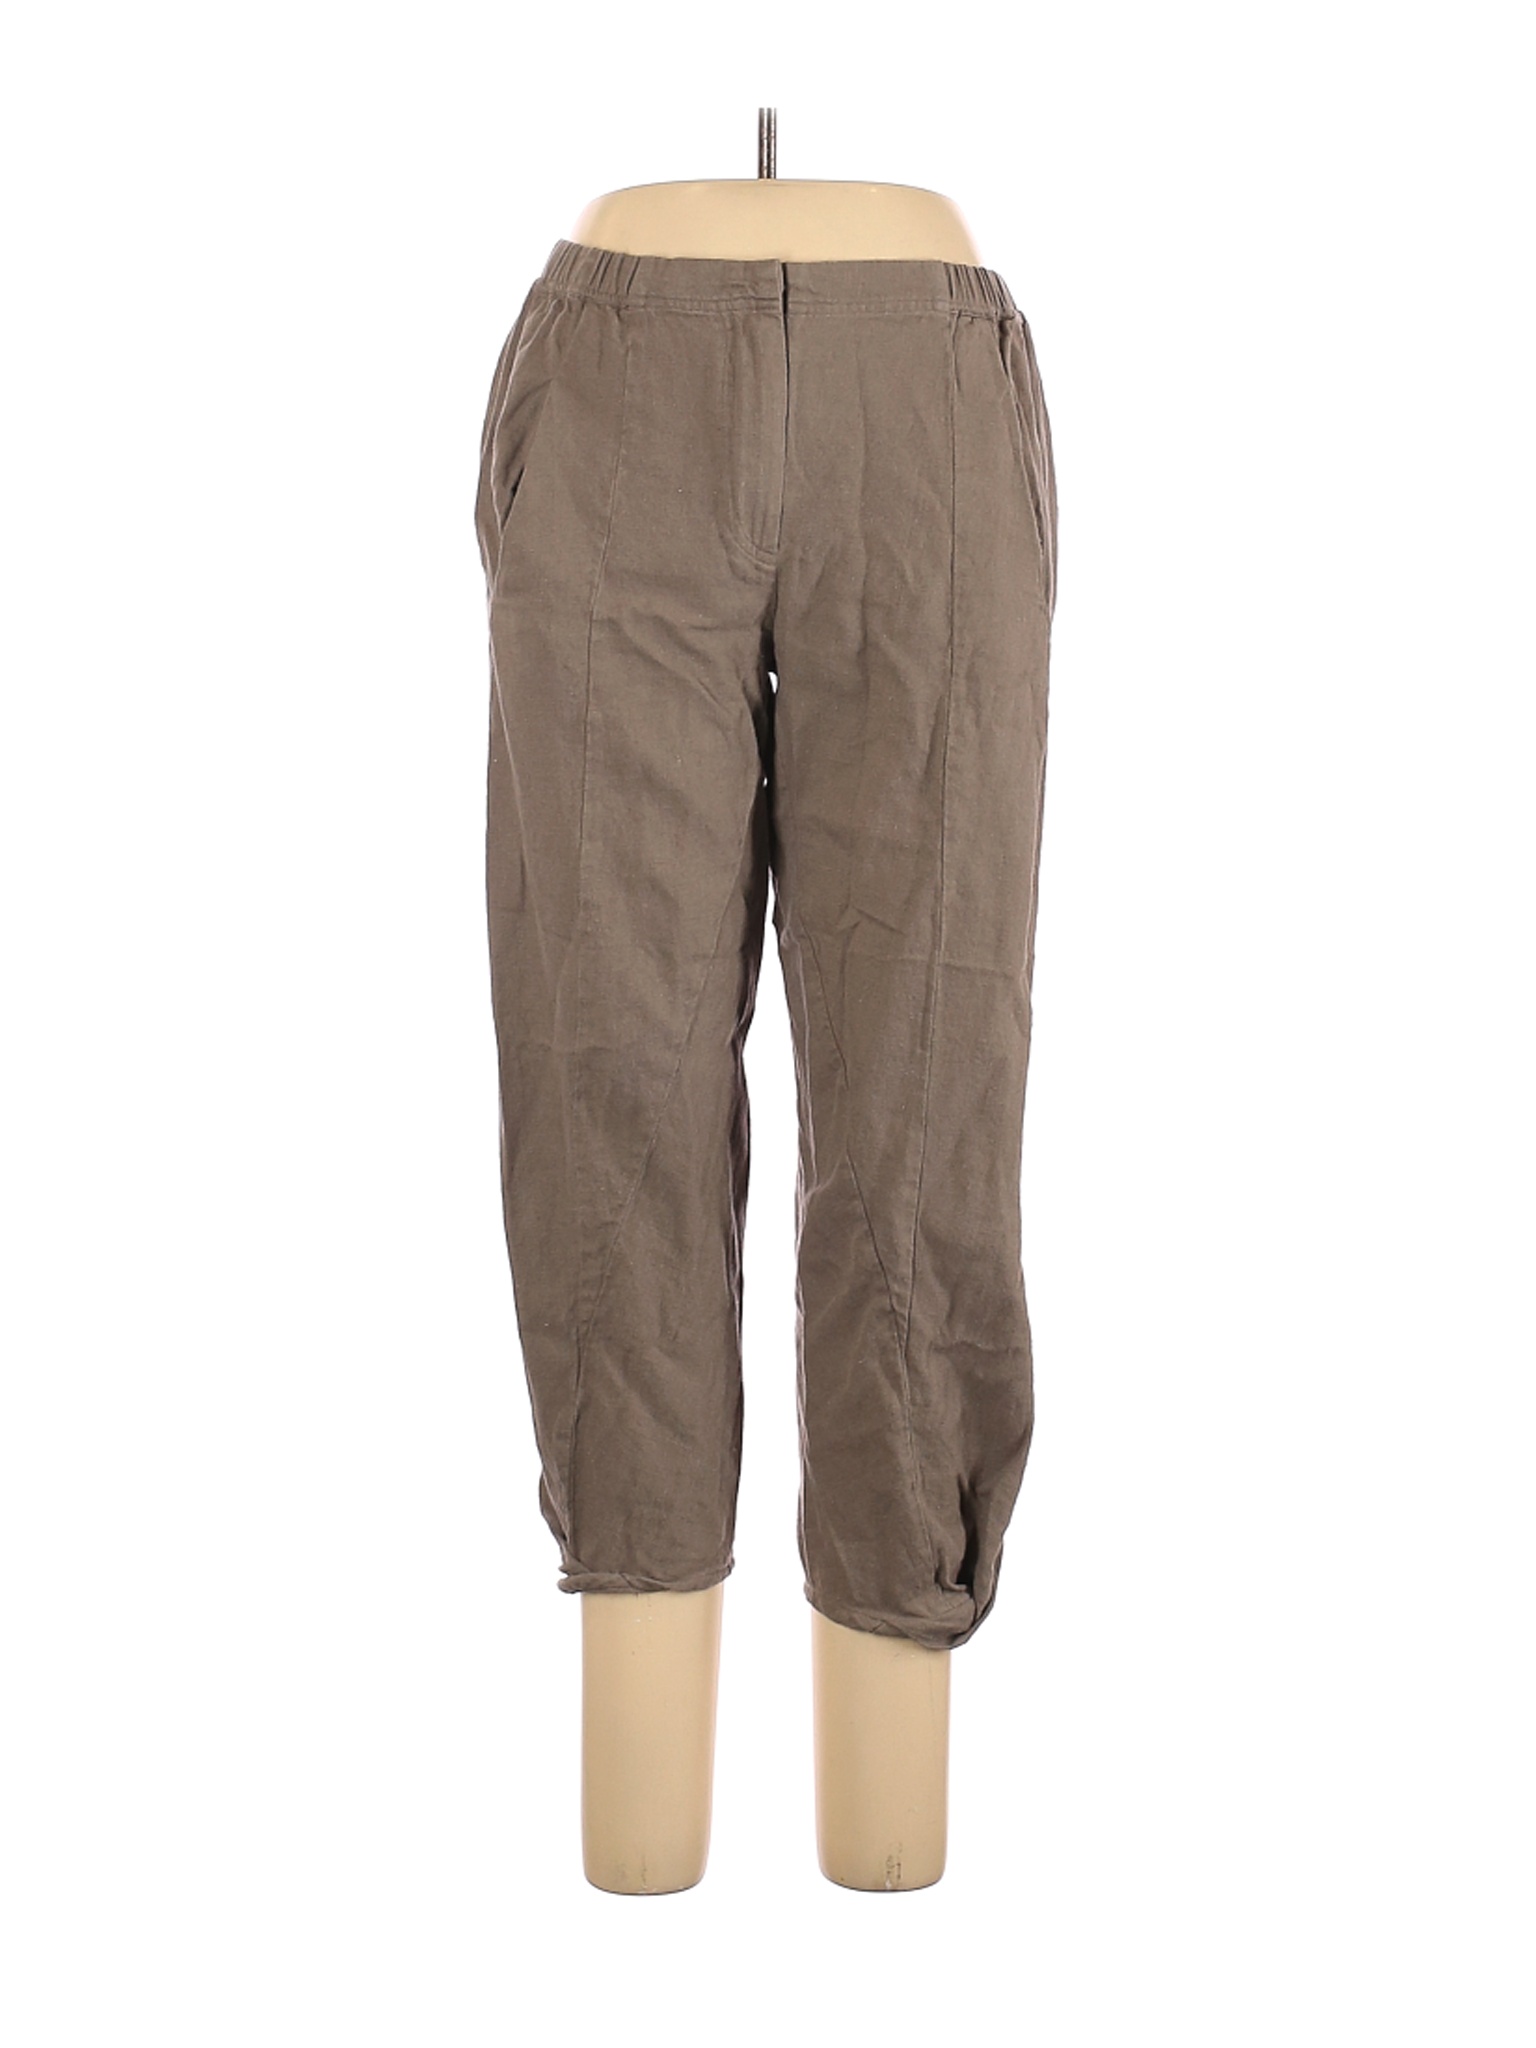 Wrap Women Brown Linen Pants 10 | eBay